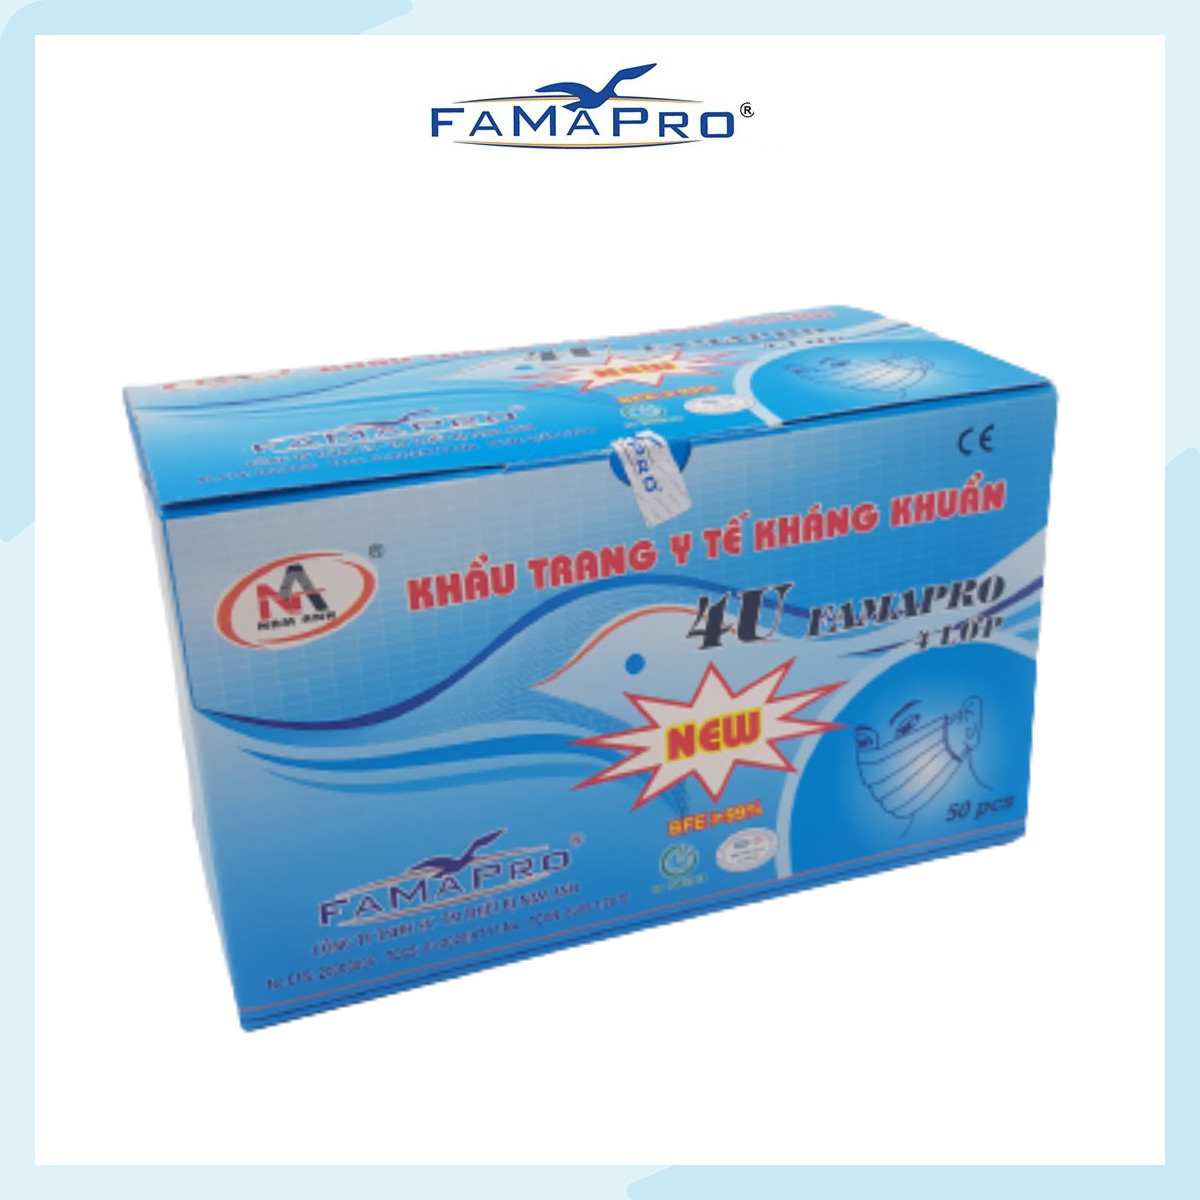 [HỘP - FAMAPRO 4U] - Khẩu trang y tế 4 lớp kháng khuẩn Famapro 4U (50 cái/ hộp ) - 1 HỘP